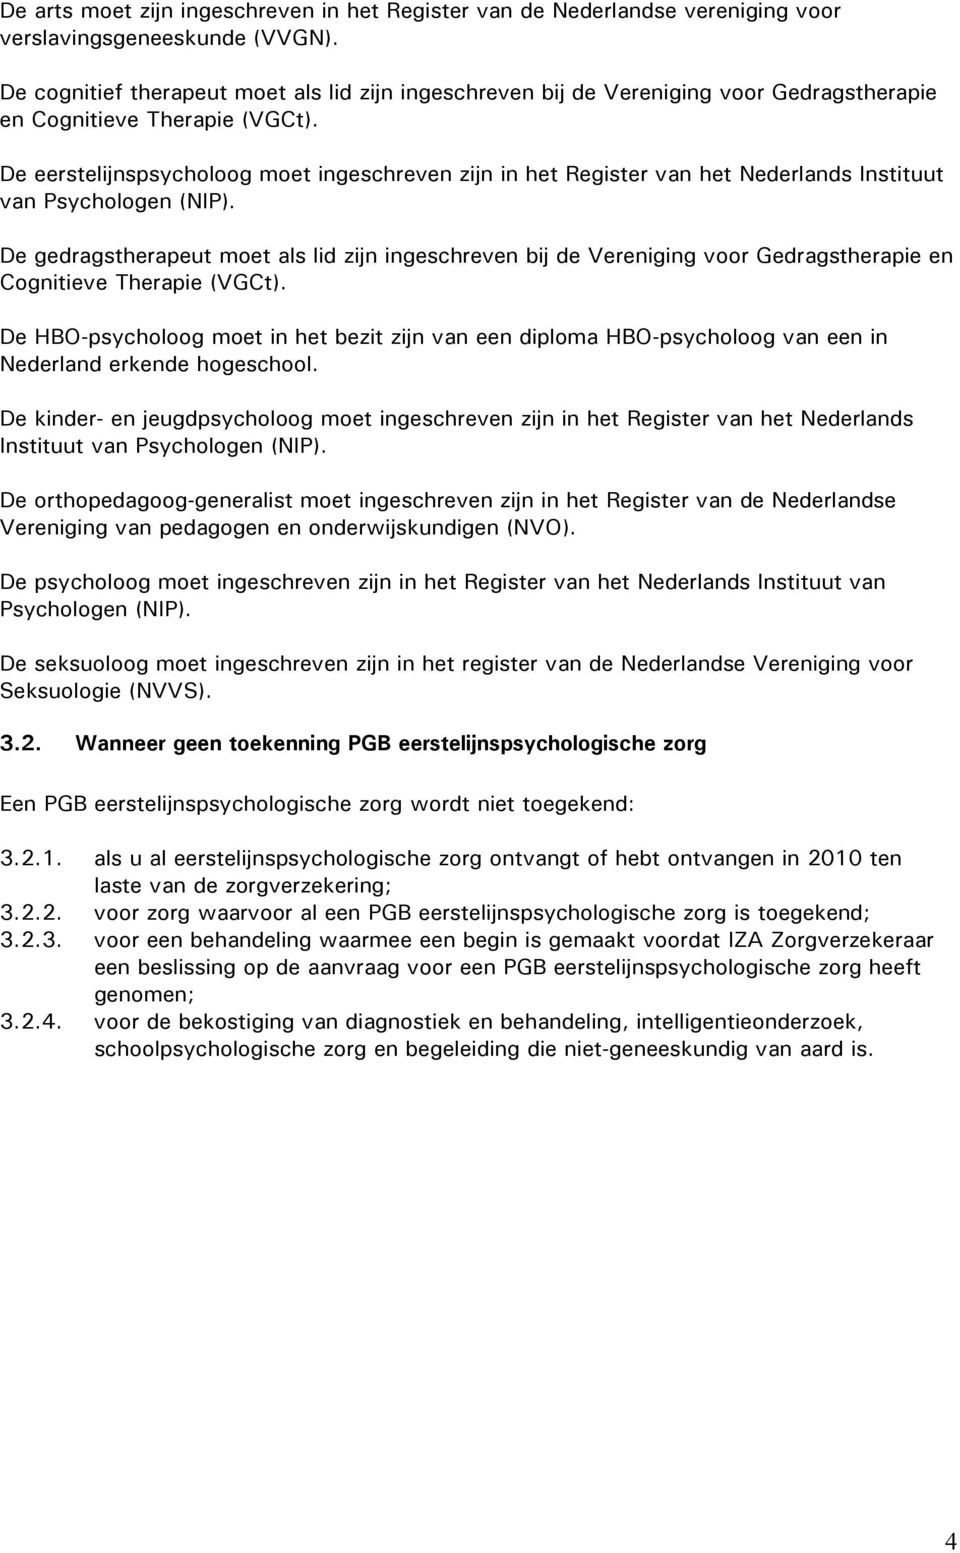 De eerstelijnspsycholoog moet ingeschreven zijn in het Register van het Nederlands Instituut van Psychologen (NIP).